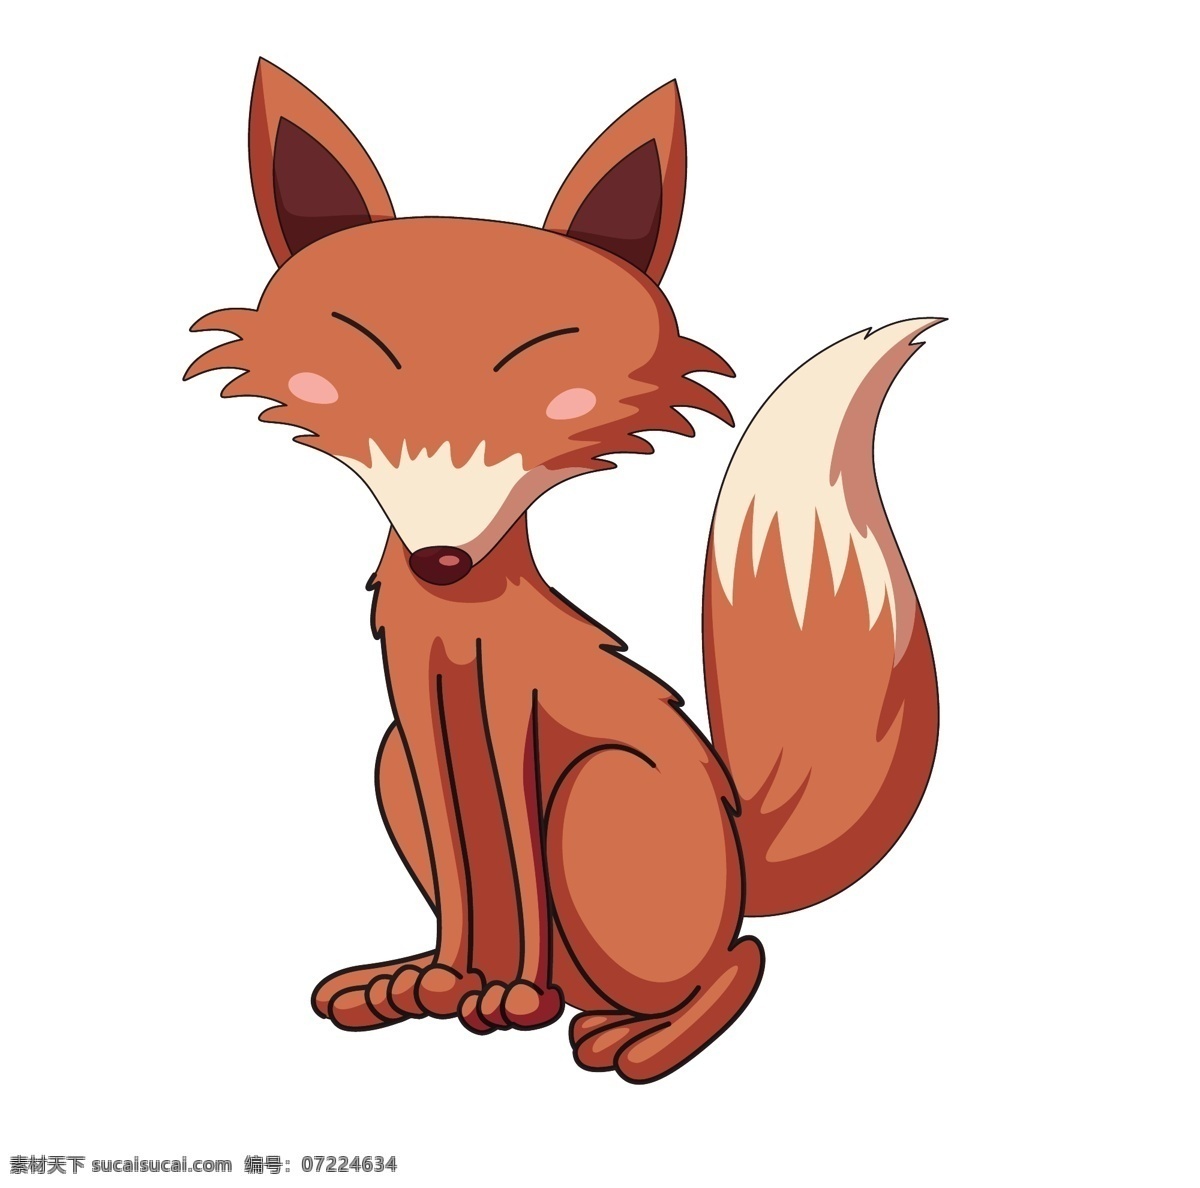 矢量 狐狸 可爱 狗 卡通 动物 模板下载 素材图片 狗狗矢量素材 动物矢量素材 eps格式